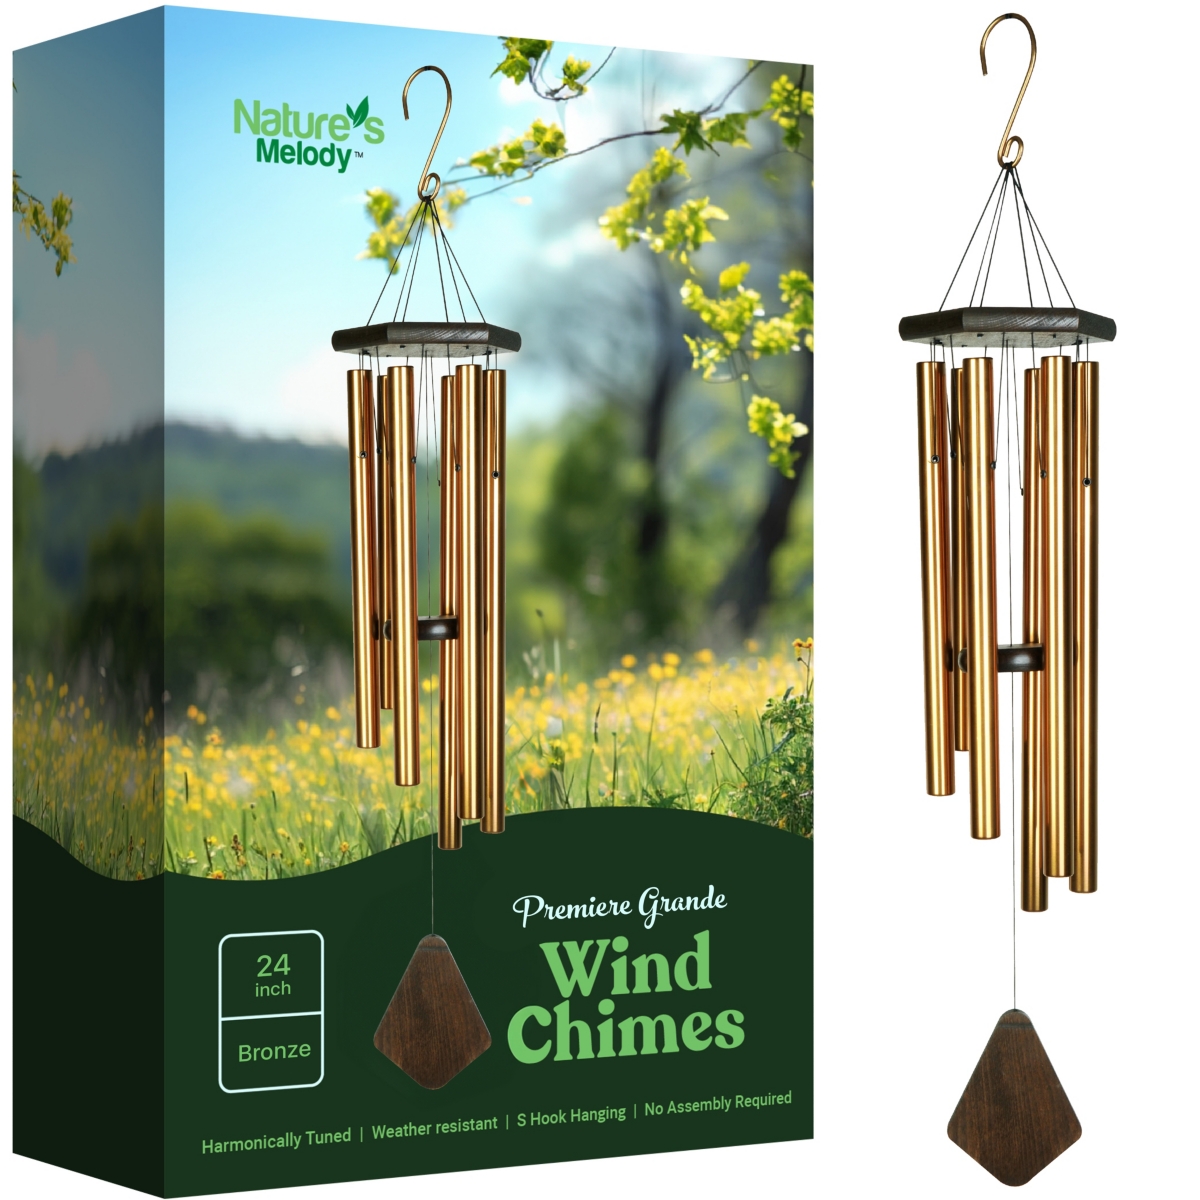 Premiere Grande Wind Chimes - 6-Tube E Pentatonic Scale Outdoor Wind chime - Bronze